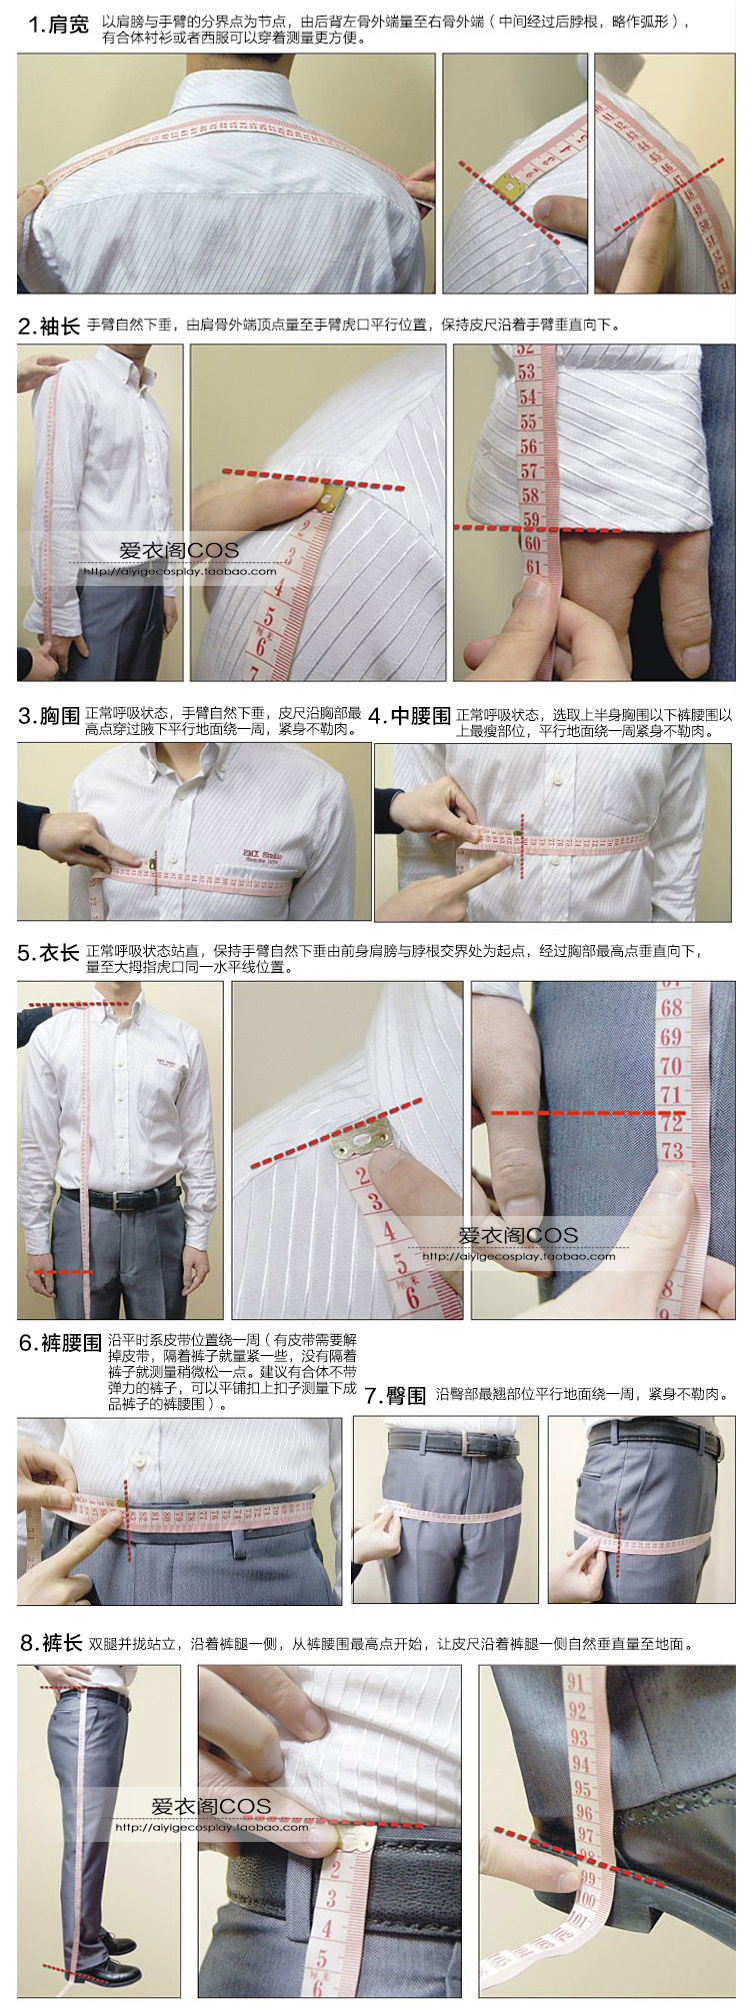 测量身体尺寸的时候,不要穿厚外套,测量紧身尺寸.